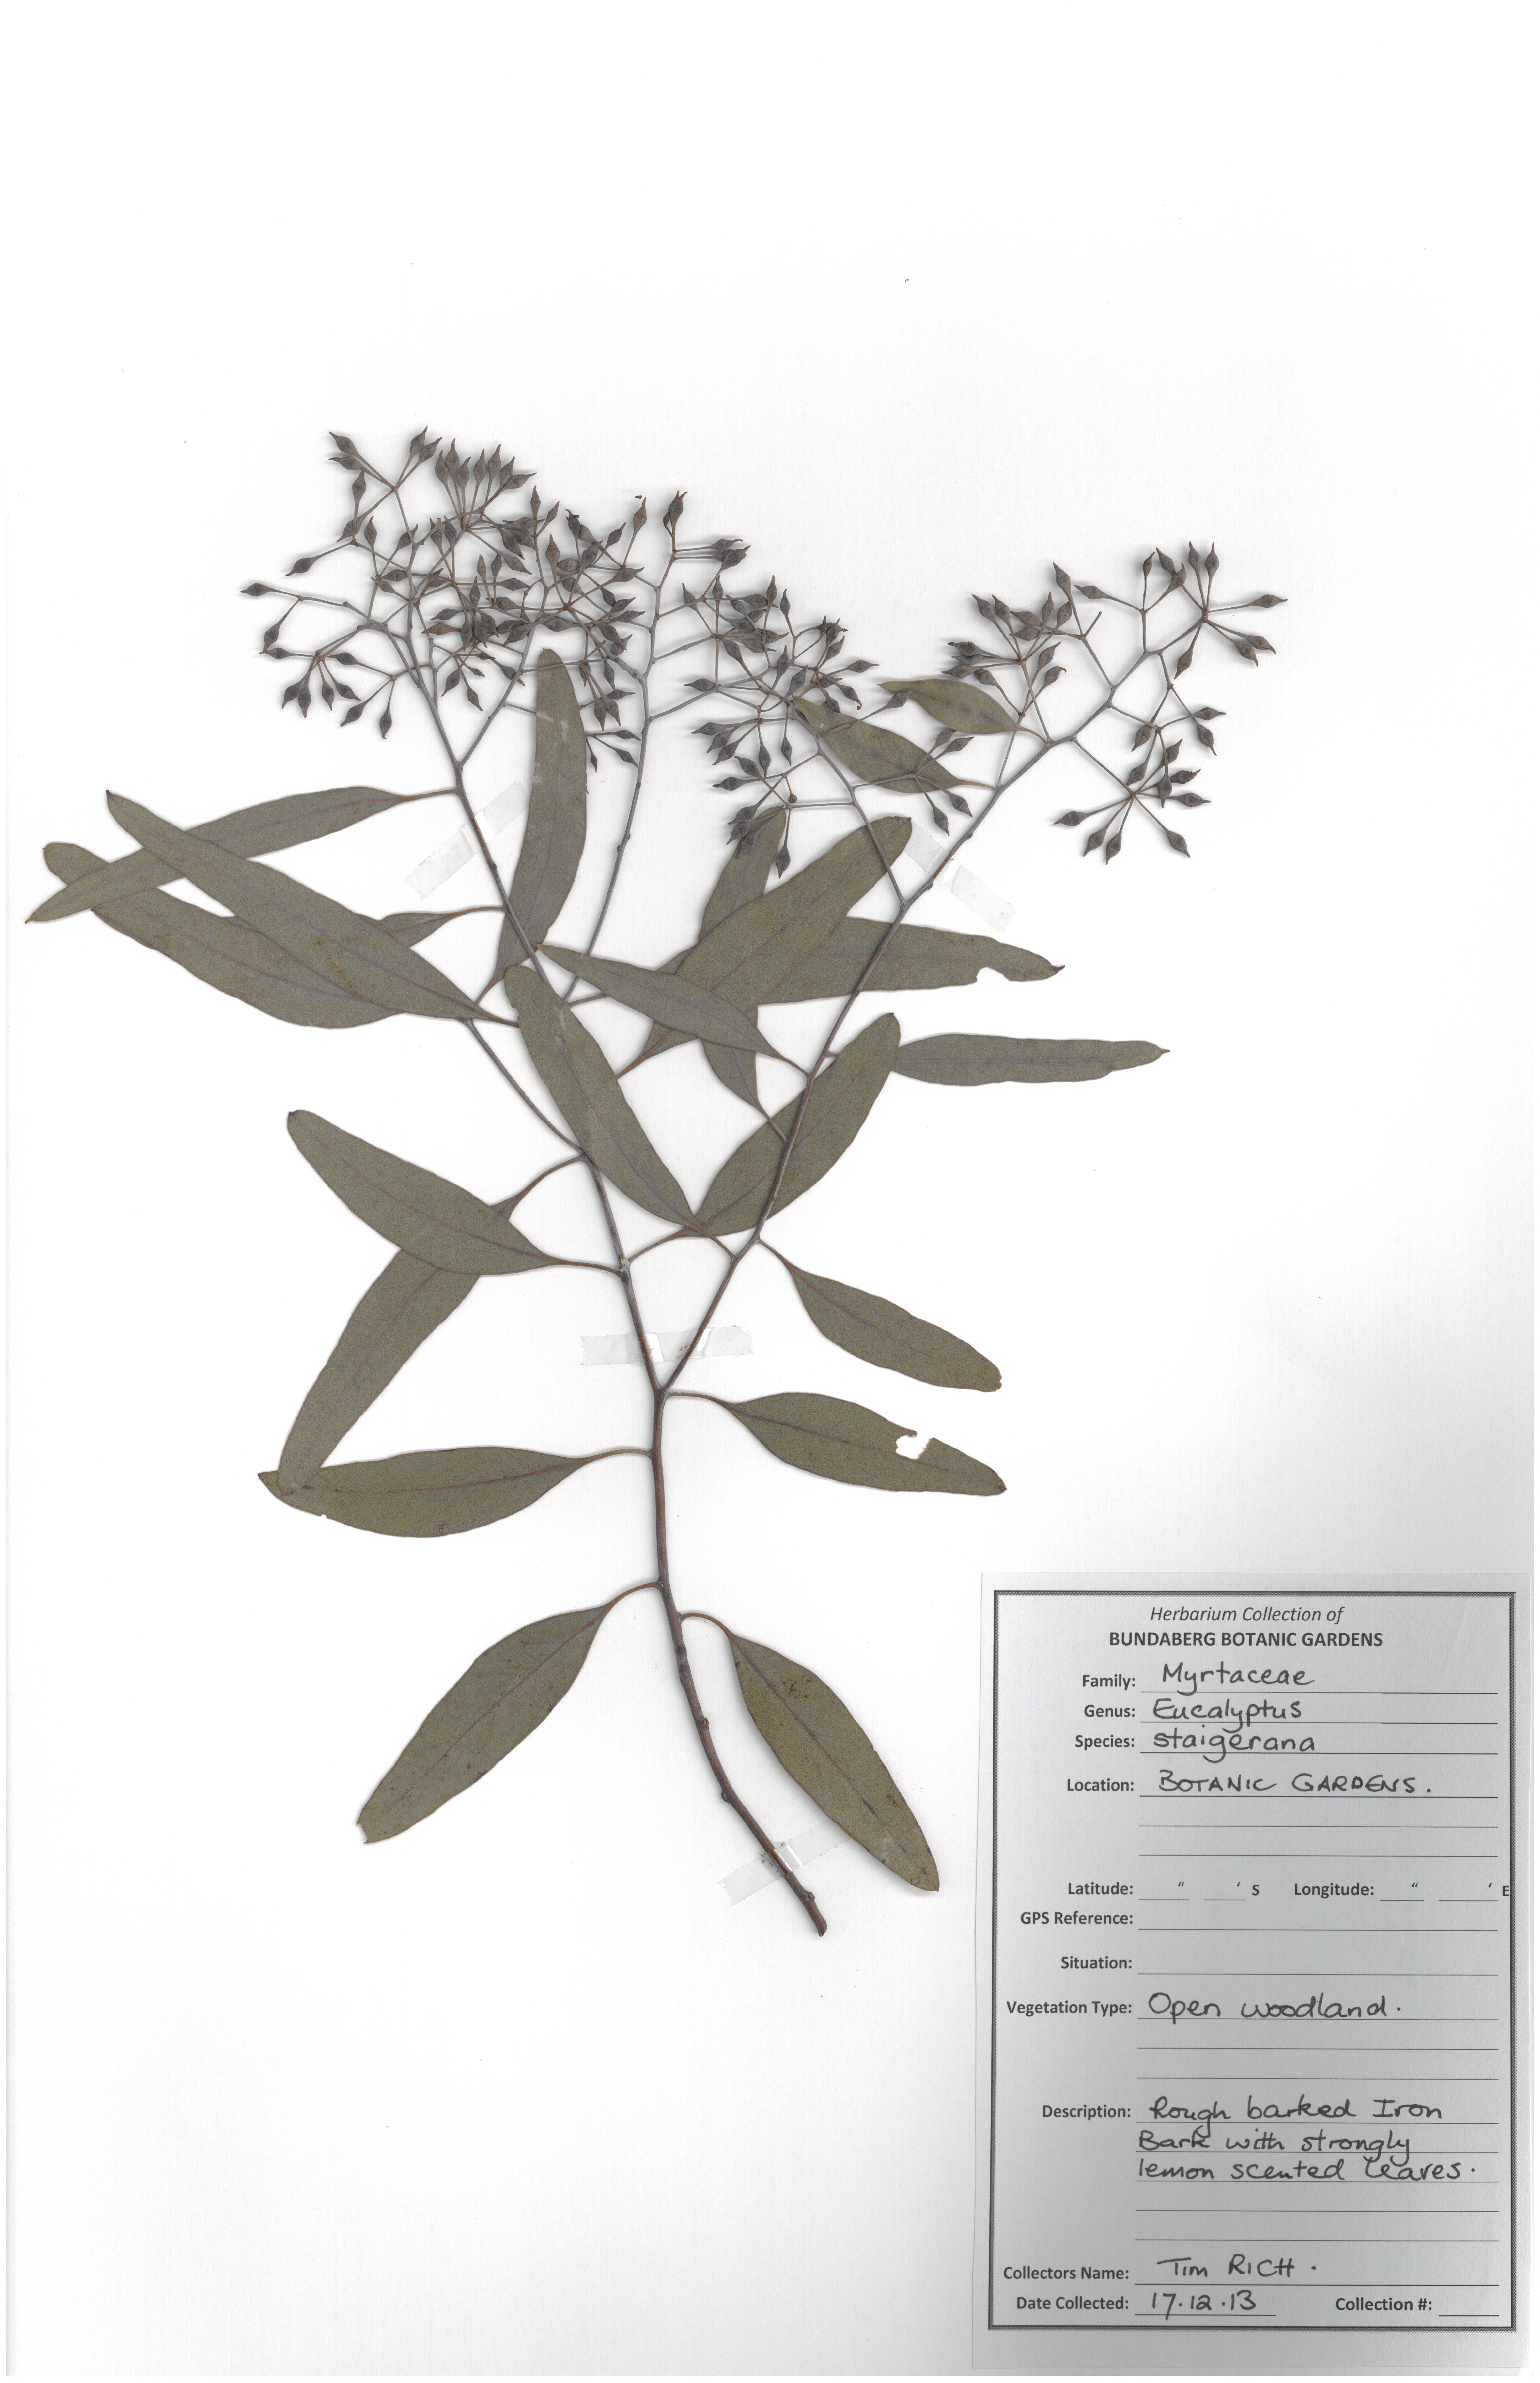 Myrtaceae eucalyptus staigerana